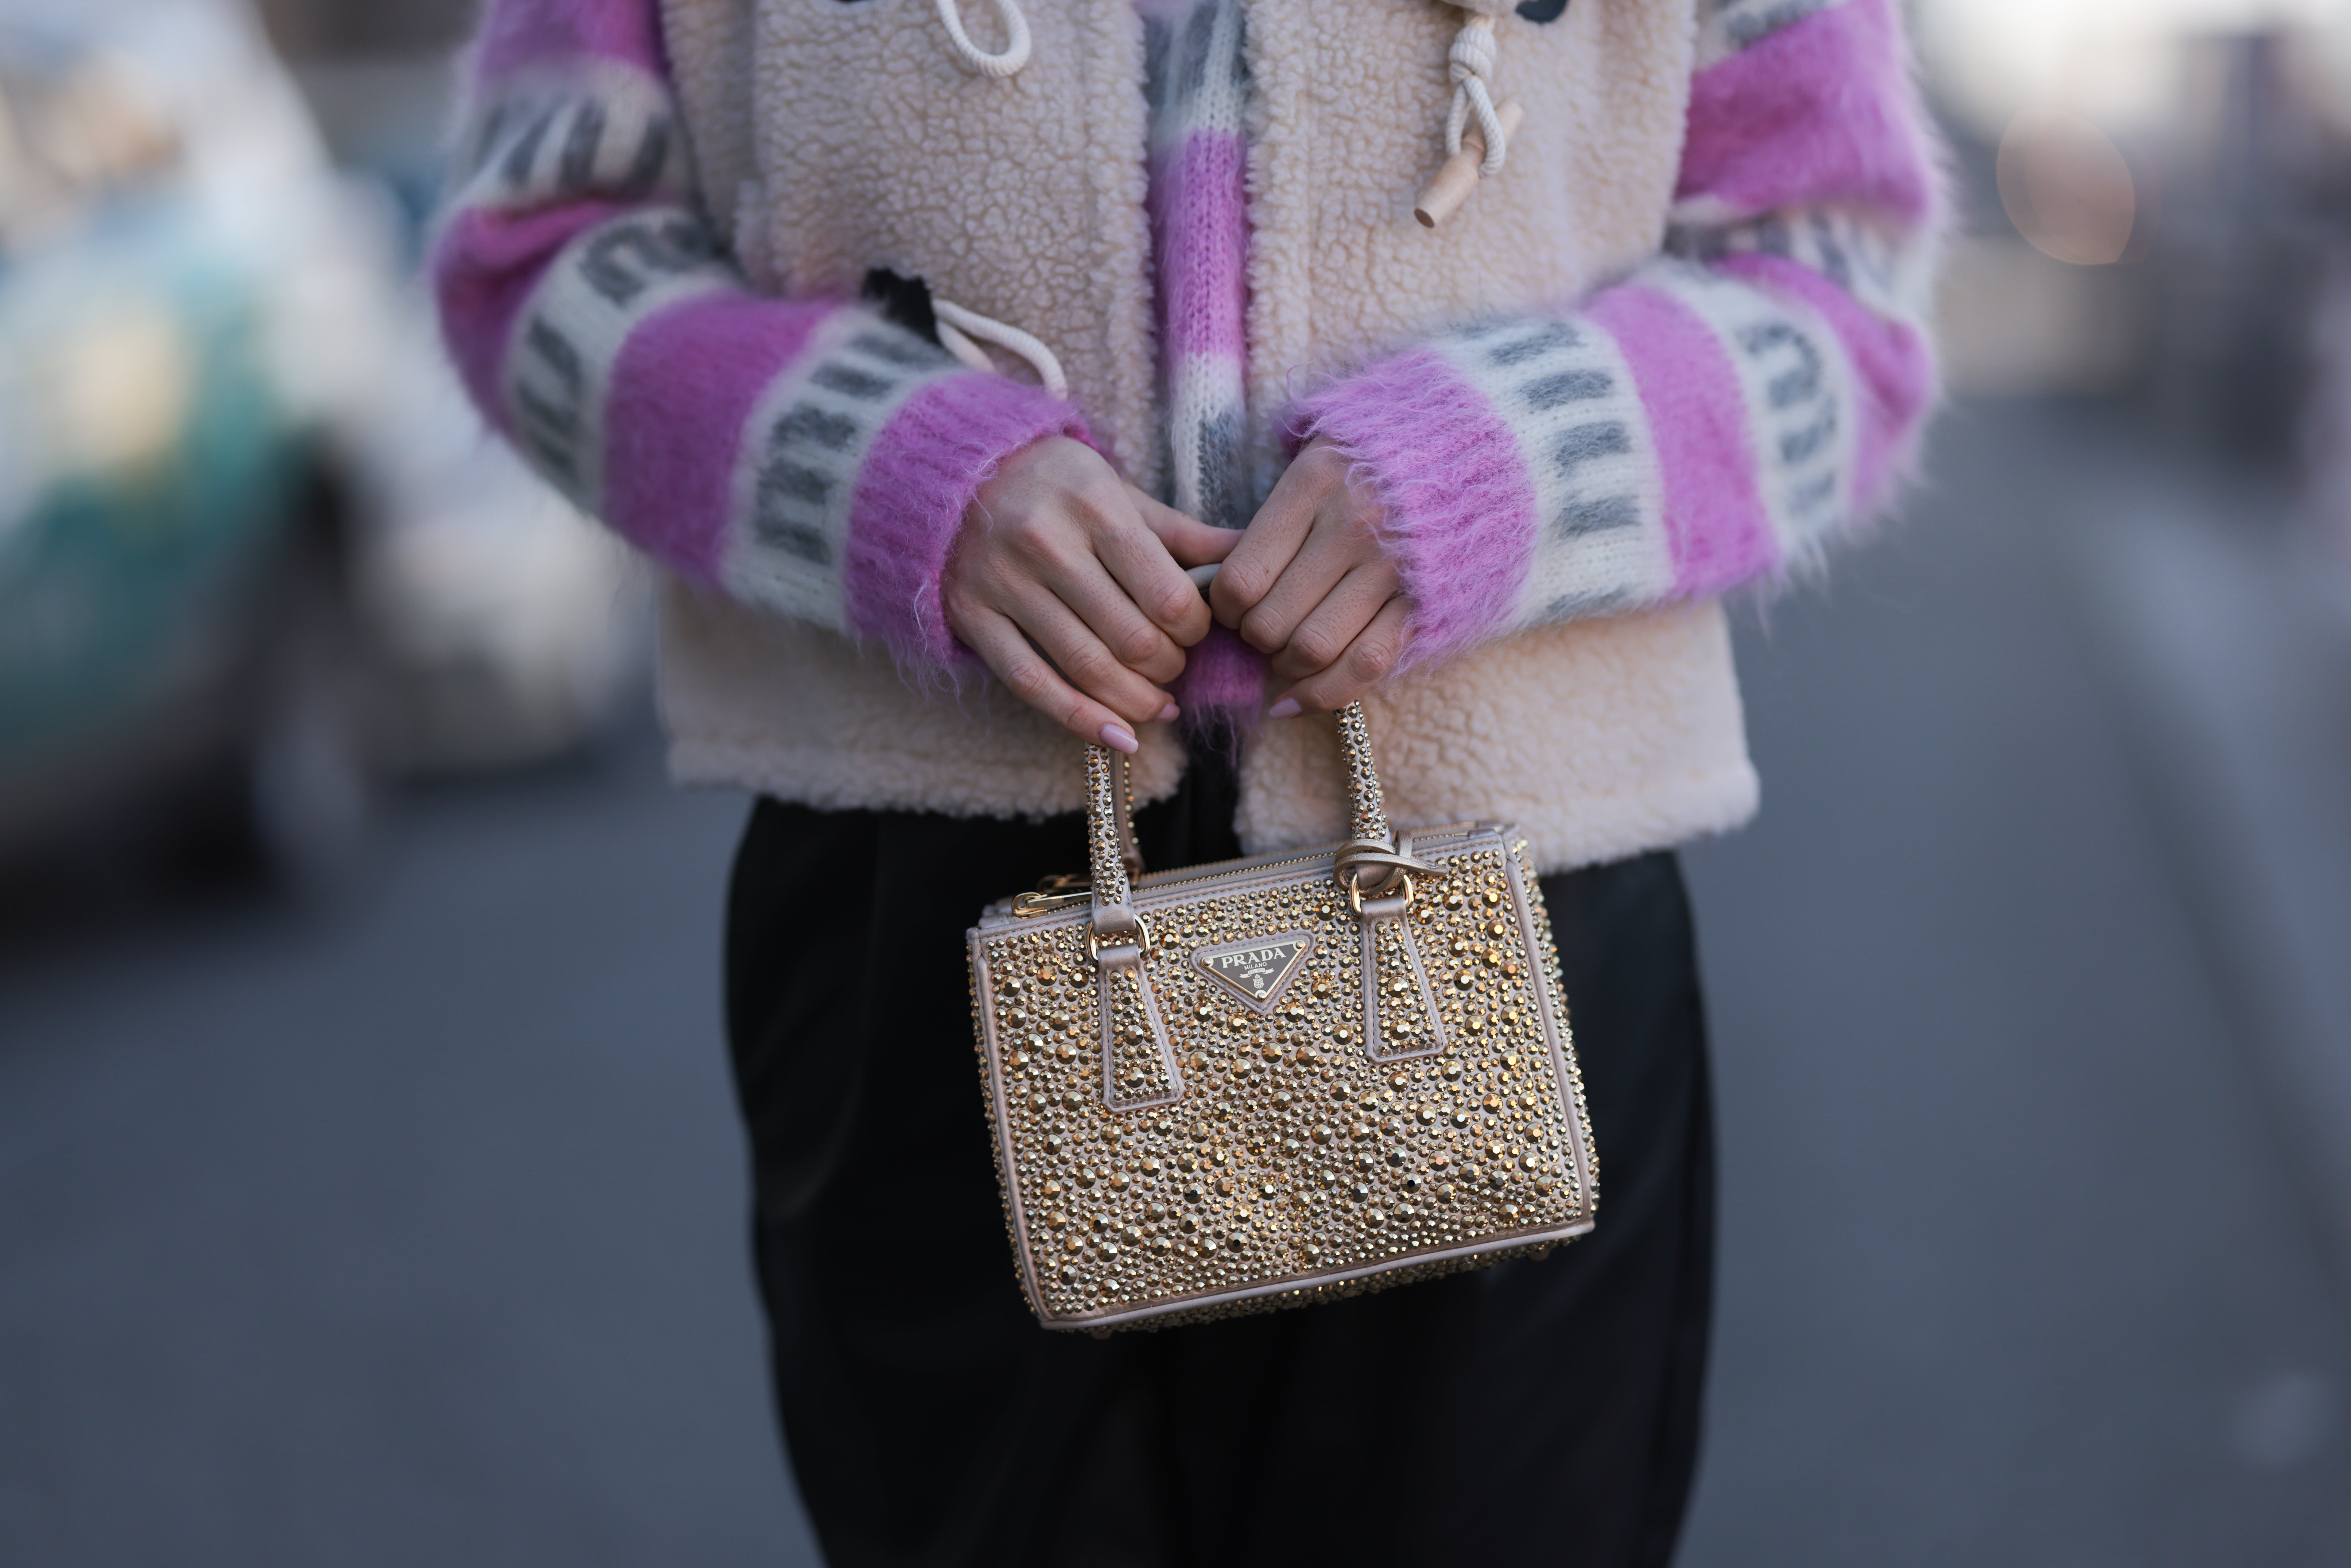 Designer Pink Bags, Luxury Resale